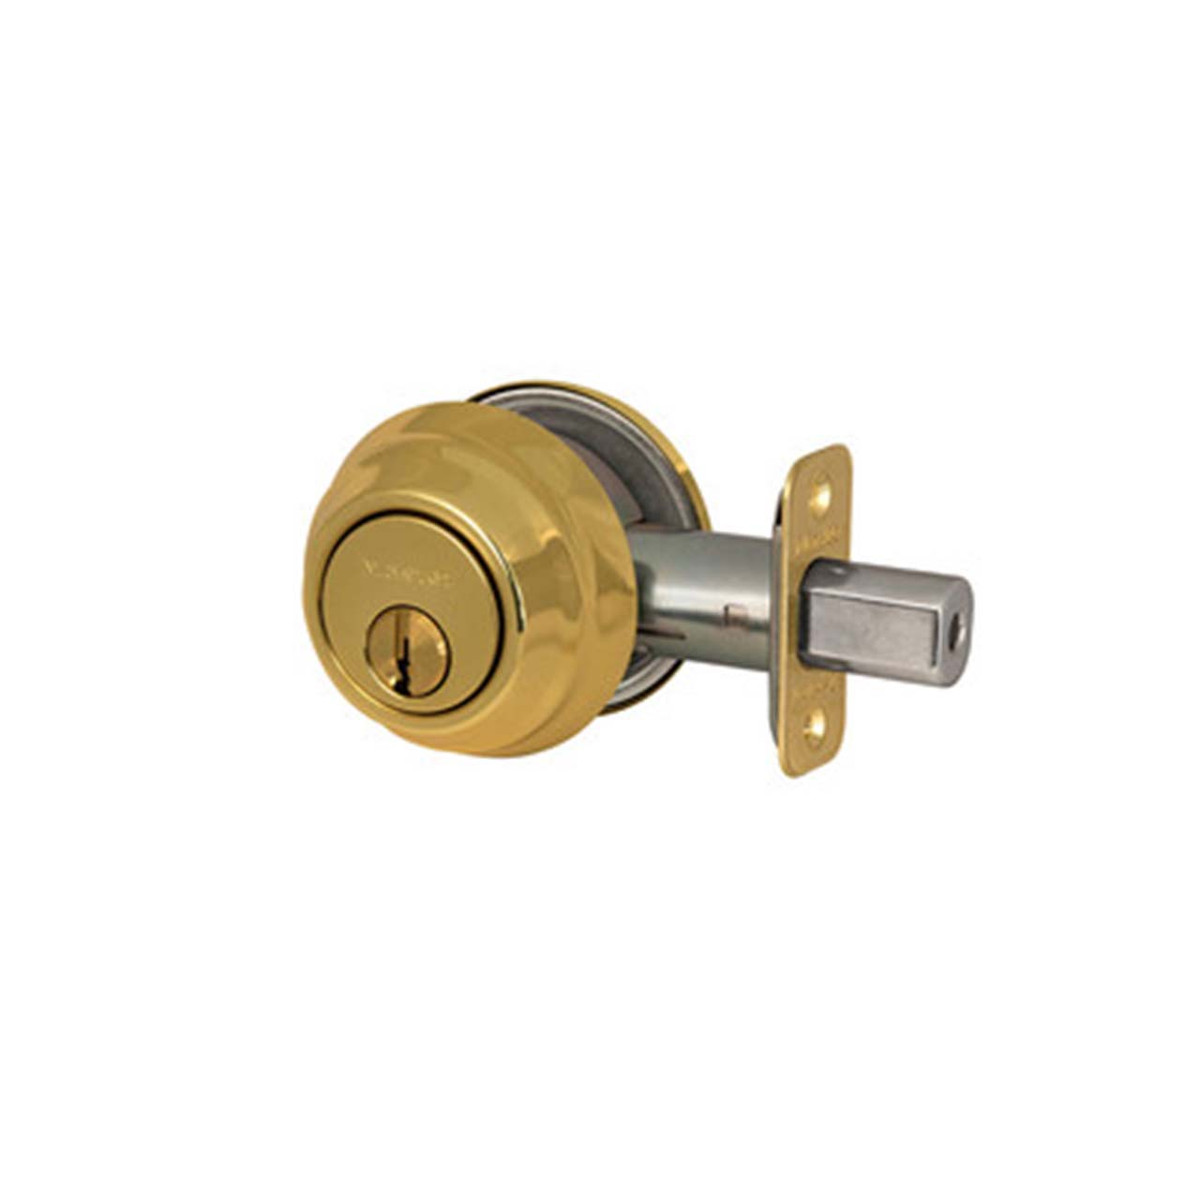 Master Lock DSH0603 Grade 1 Single Cylinder Deadbolt, SC1 Keyway, 03 Polished Brass, Adjustable Backset 2-3/8" or 2-3/4"